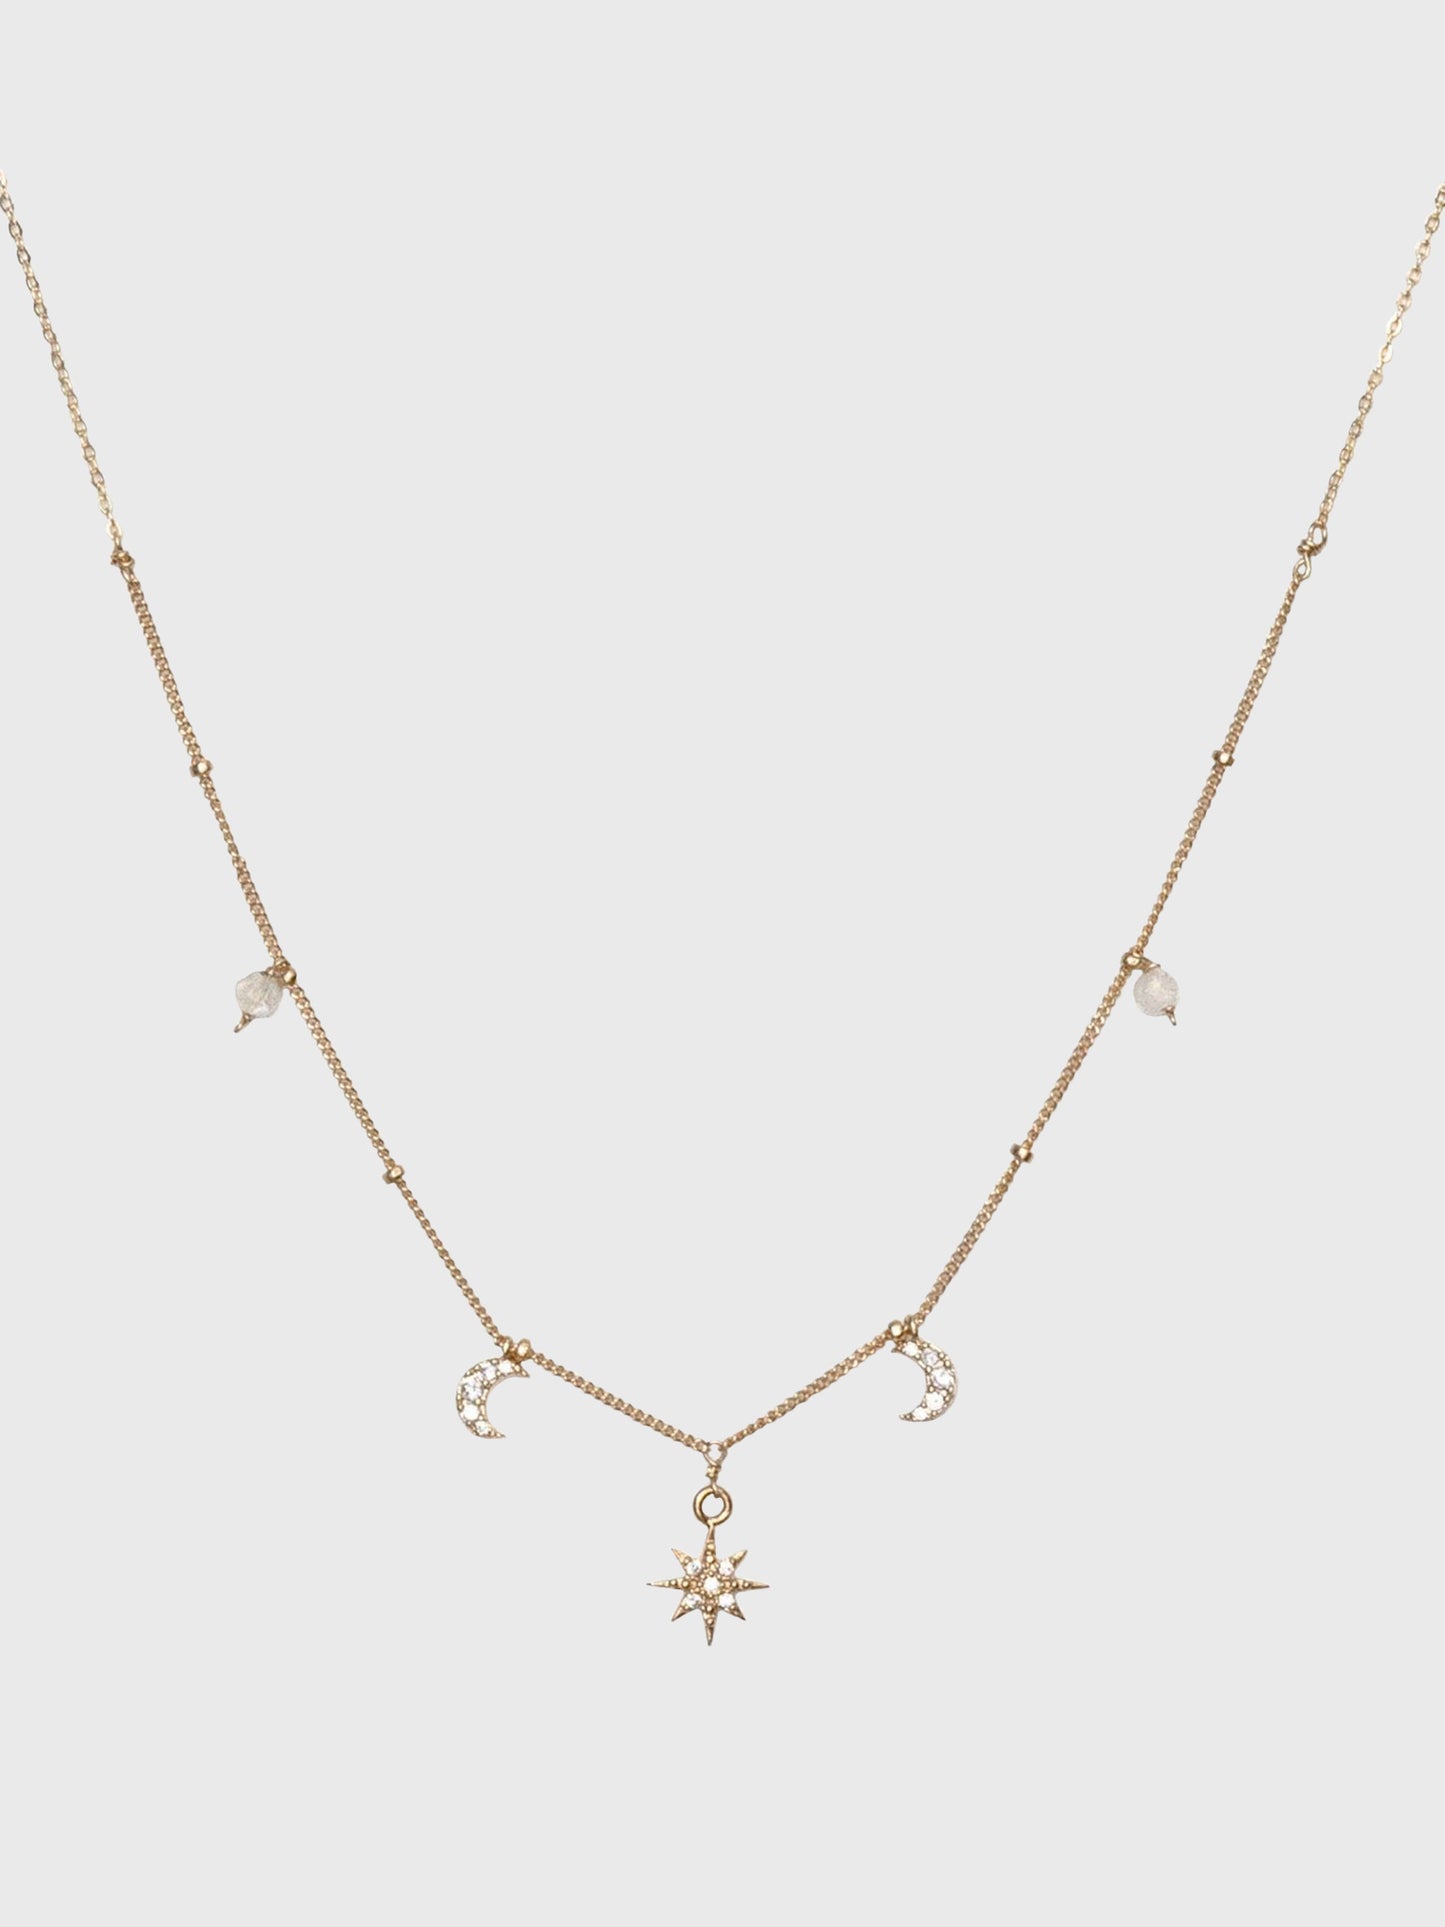 Kozakh Jewelry Tara Necklace